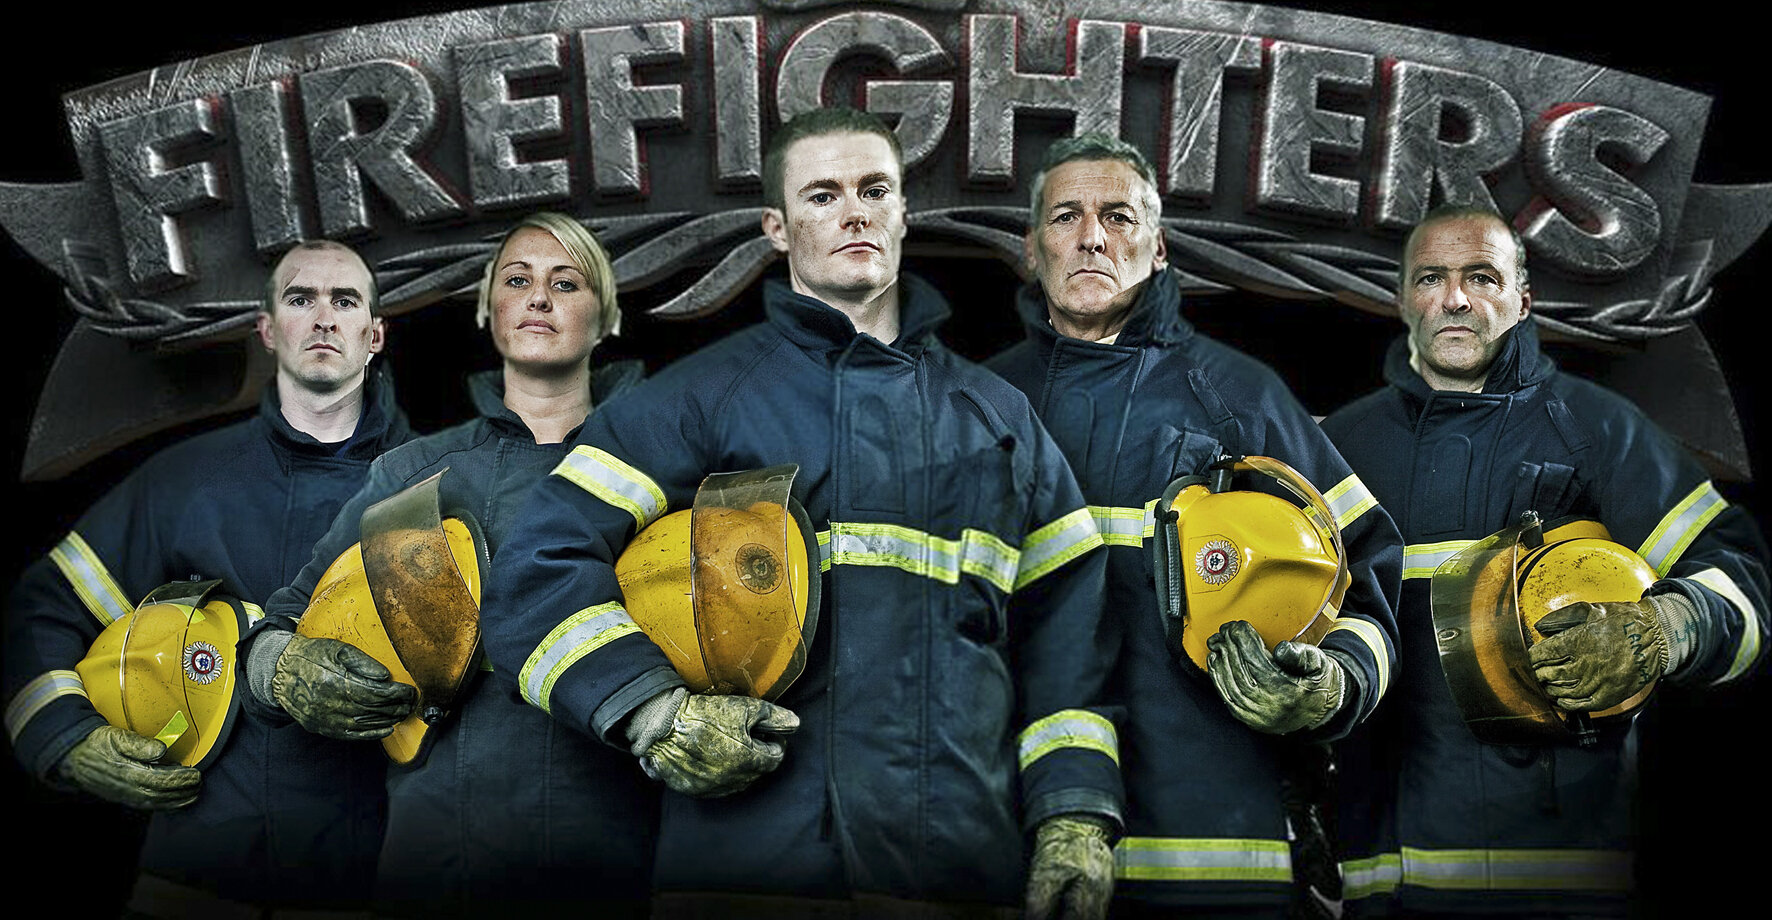 rte_firefighters.jpg